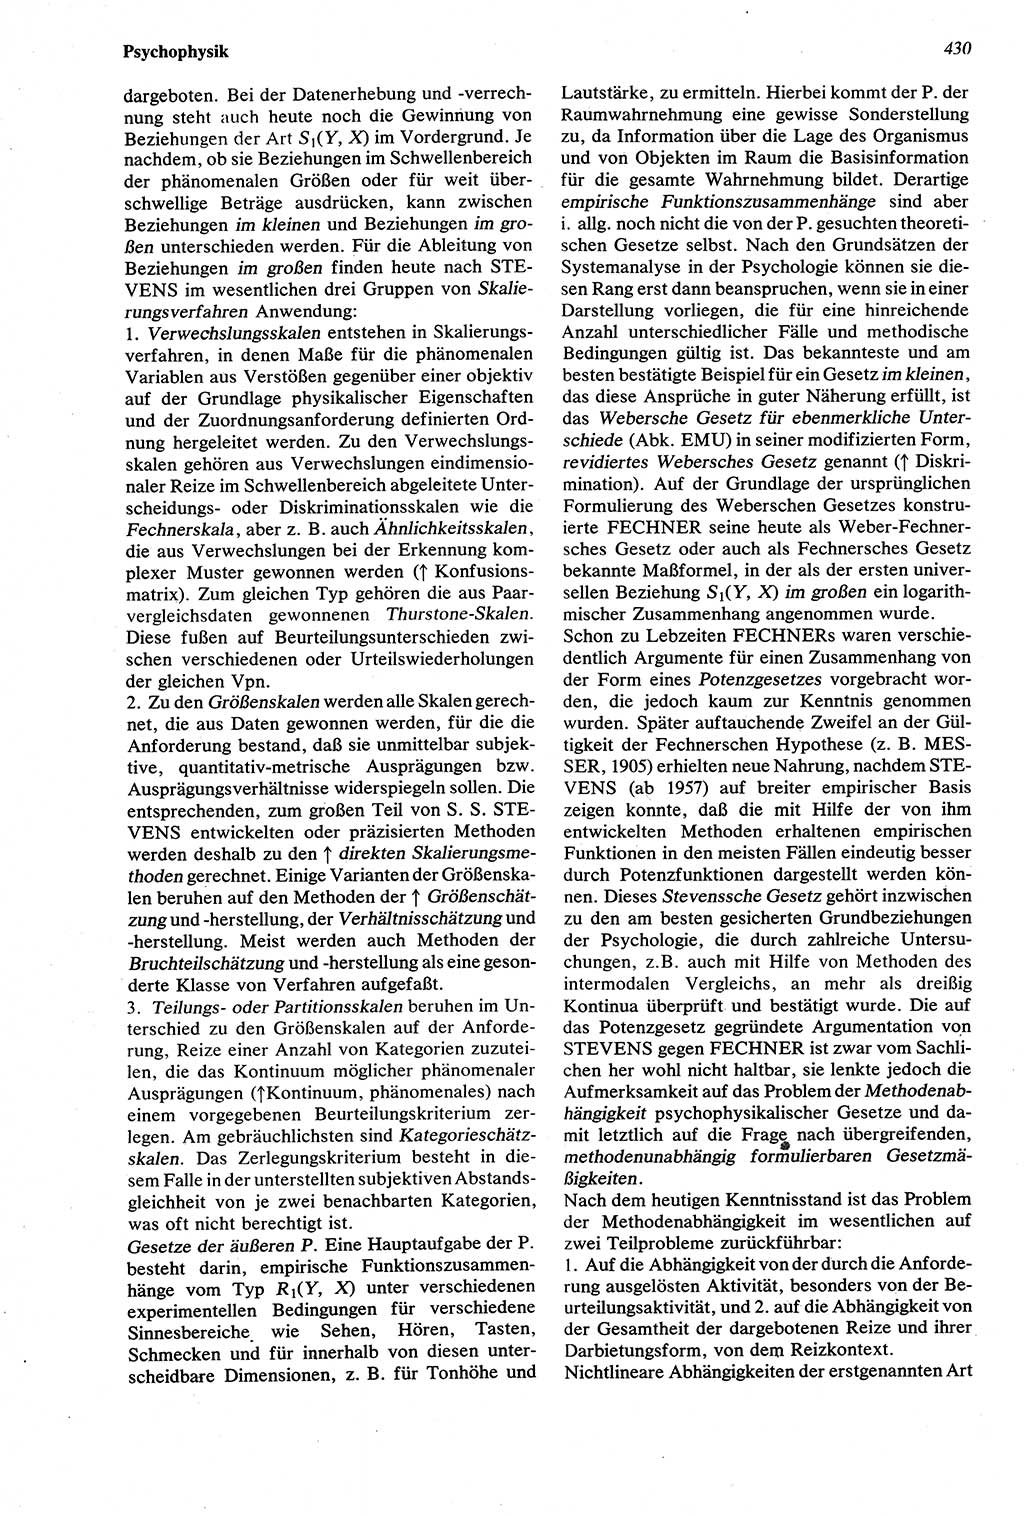 Wörterbuch der Psychologie [Deutsche Demokratische Republik (DDR)] 1976, Seite 430 (Wb. Psych. DDR 1976, S. 430)